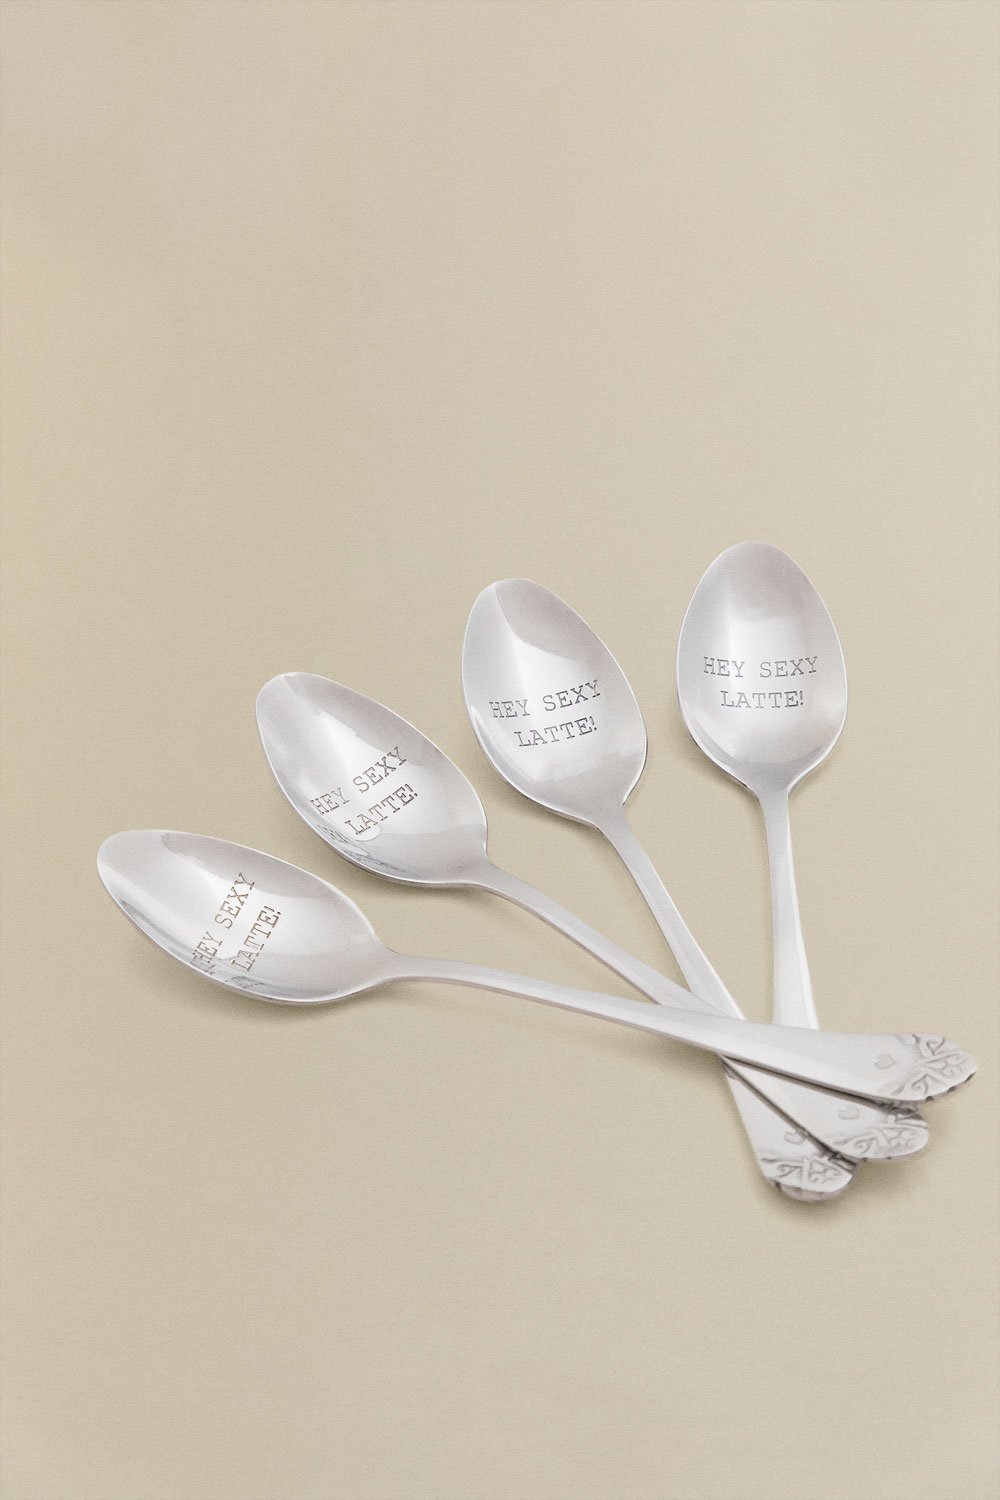 Set 4 cucchiai da dessert Odon, immagine della galleria 1